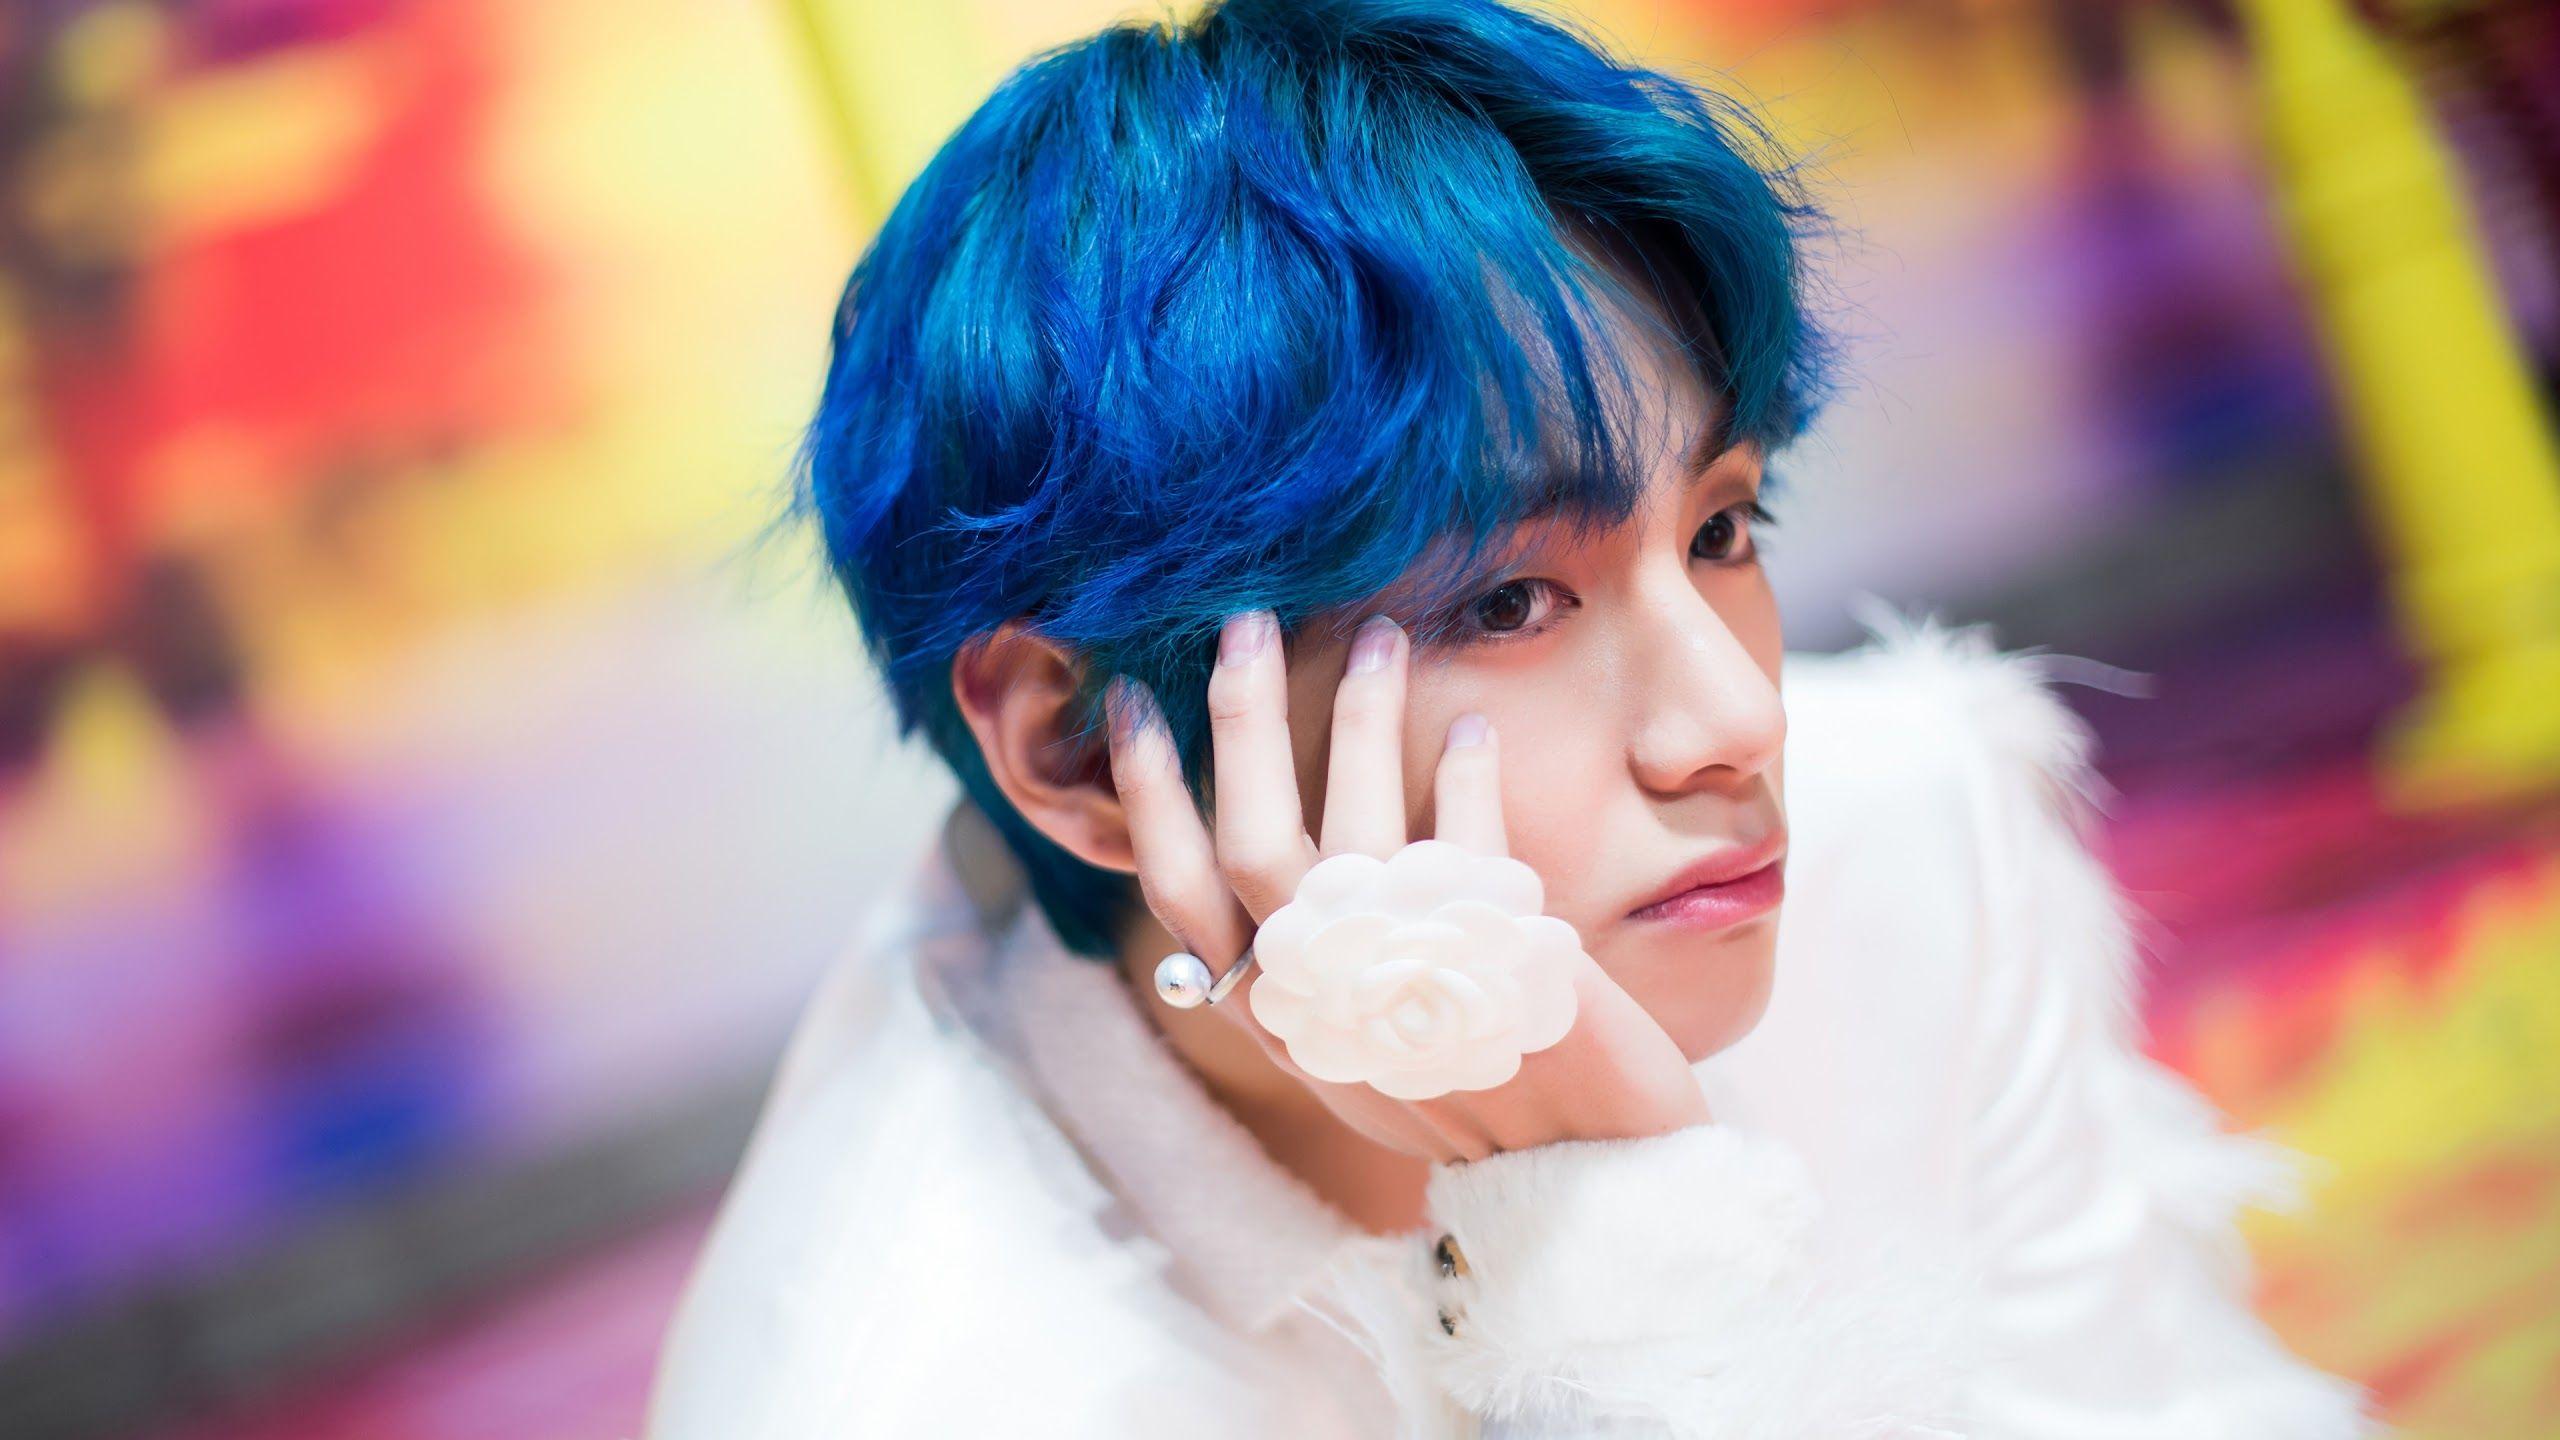 Blue hair Taehyung PC - wide 4